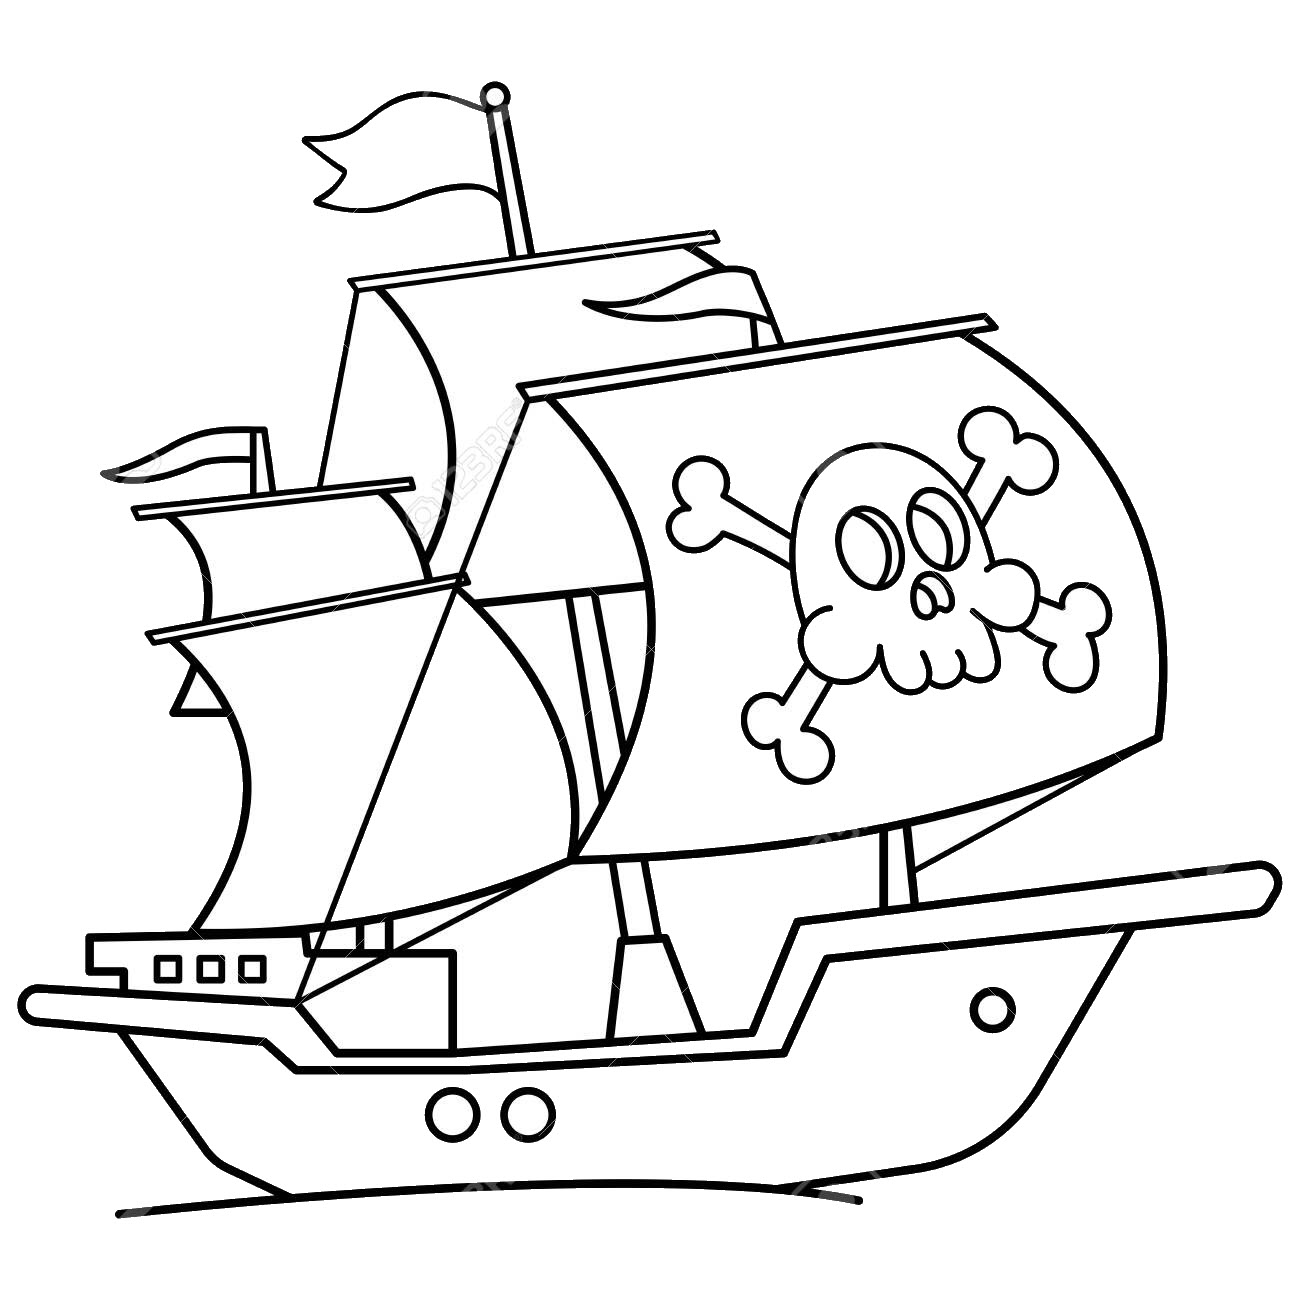 Tranh tô màu thuyền hải tặc đẹp, dễ thương